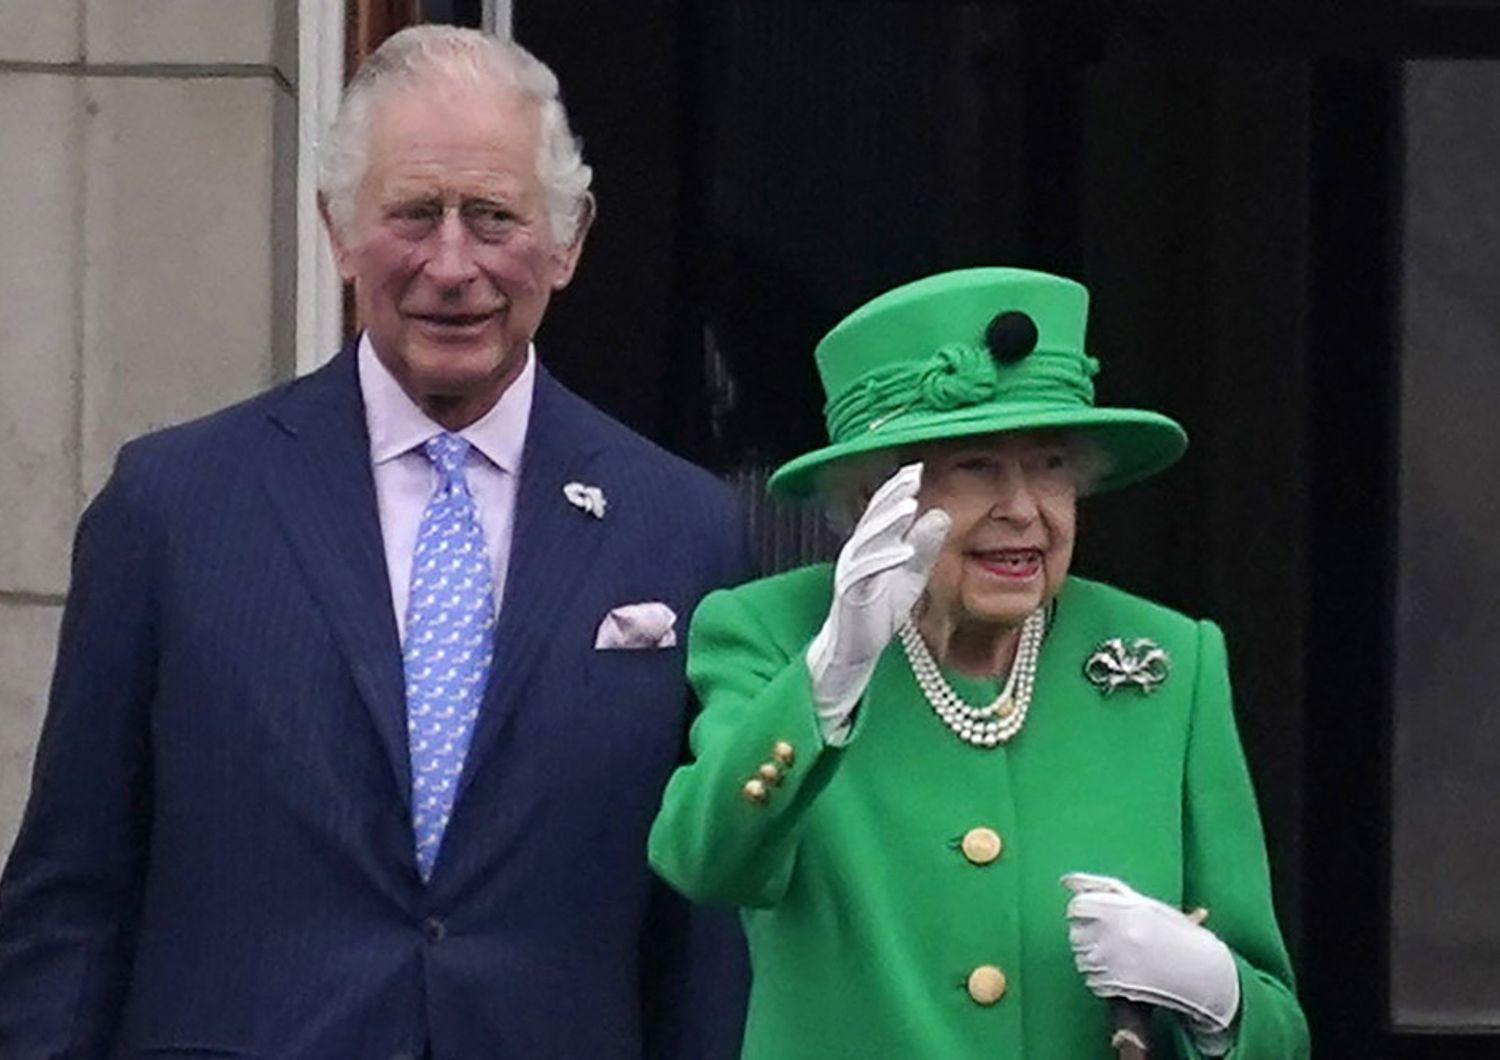 La regina Elisabetta II saluta i sudditi con al fianco il principe Carlo